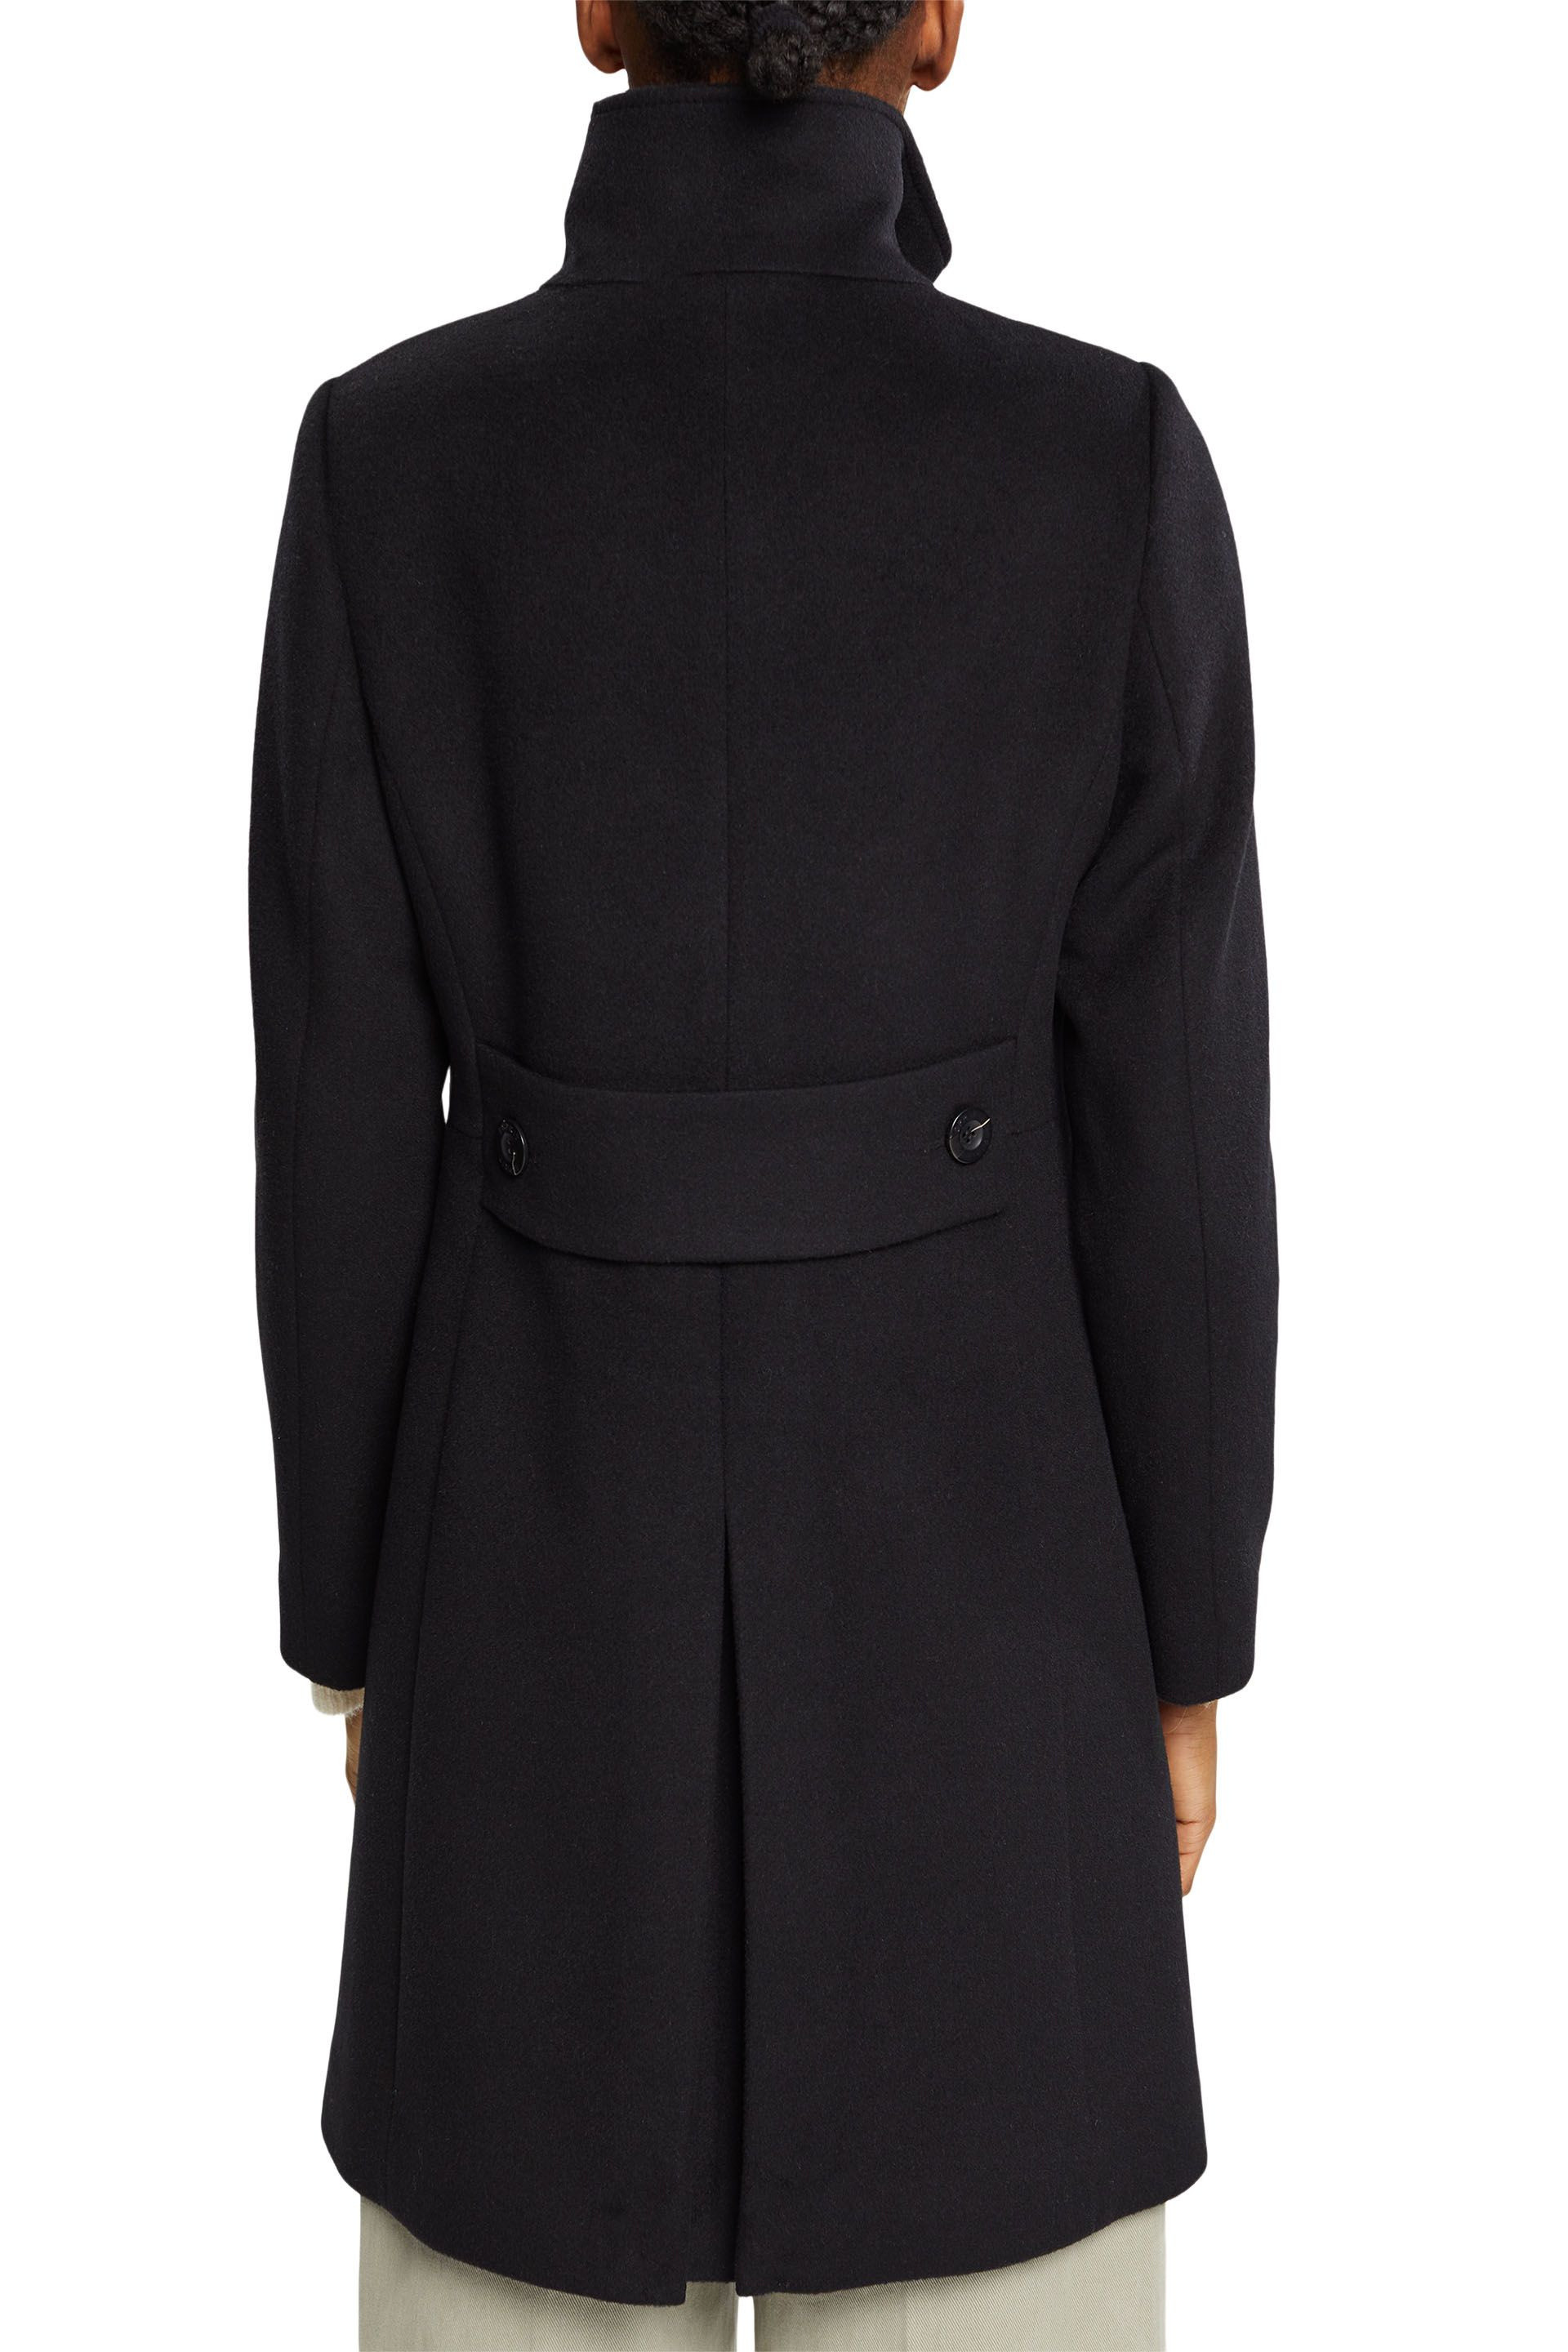 Coat in wool blend, Black, large image number 2